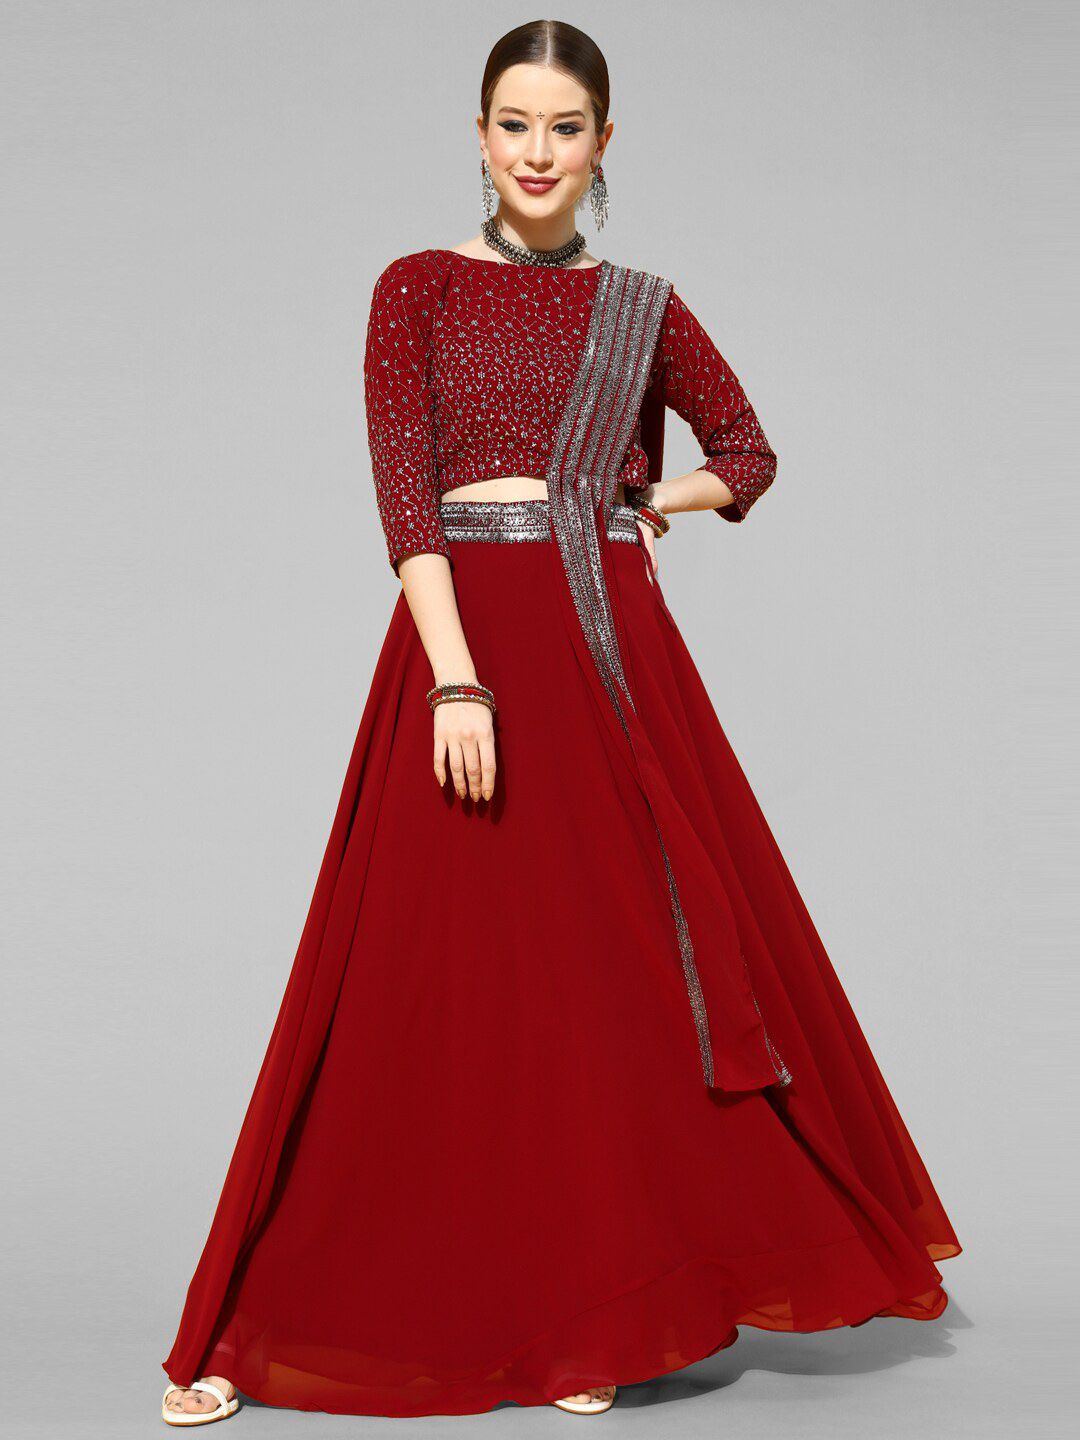 Kvsfab Embellished Ready to Wear Lehenga & Blouse With Dupatta Price in India